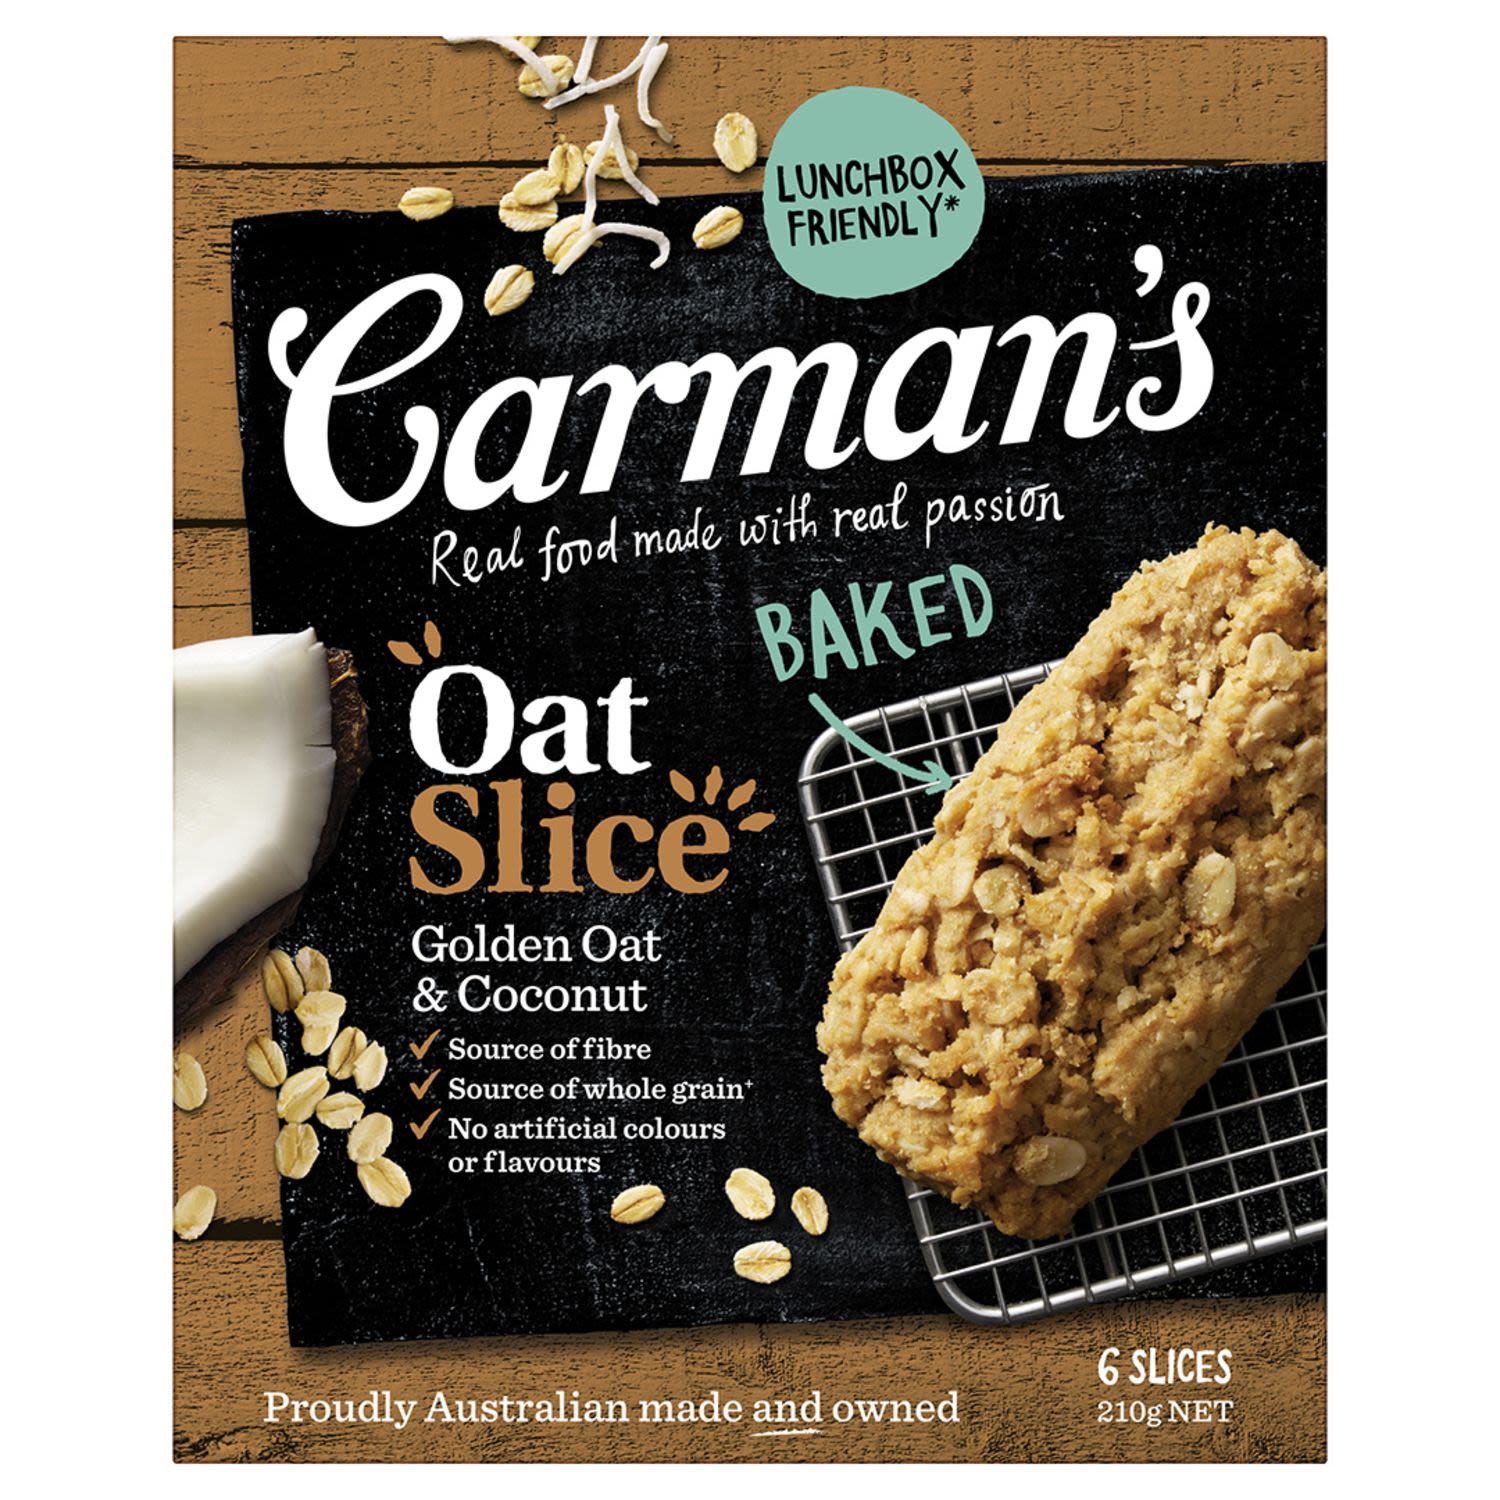 Carman's Golden Oat & Coconut Oat Slice, 6 Each